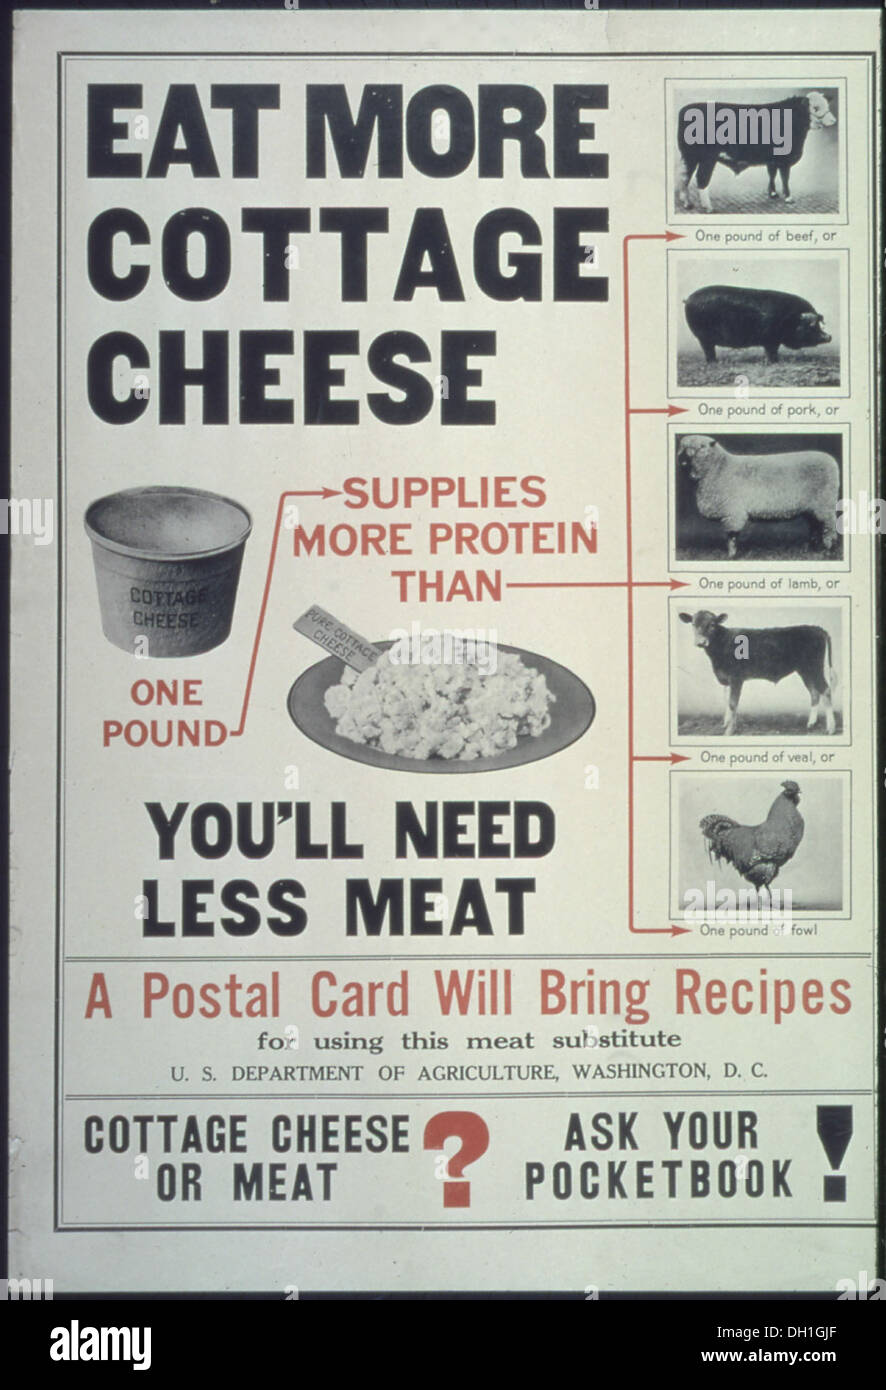 Essen Sie mehr Hüttenkäse... Sie benötigen weniger Fleisch... Eine Postkarte wird Rezepte bringen... Hüttenkäse oder Meat5E Fragen... 512542 Stockfoto